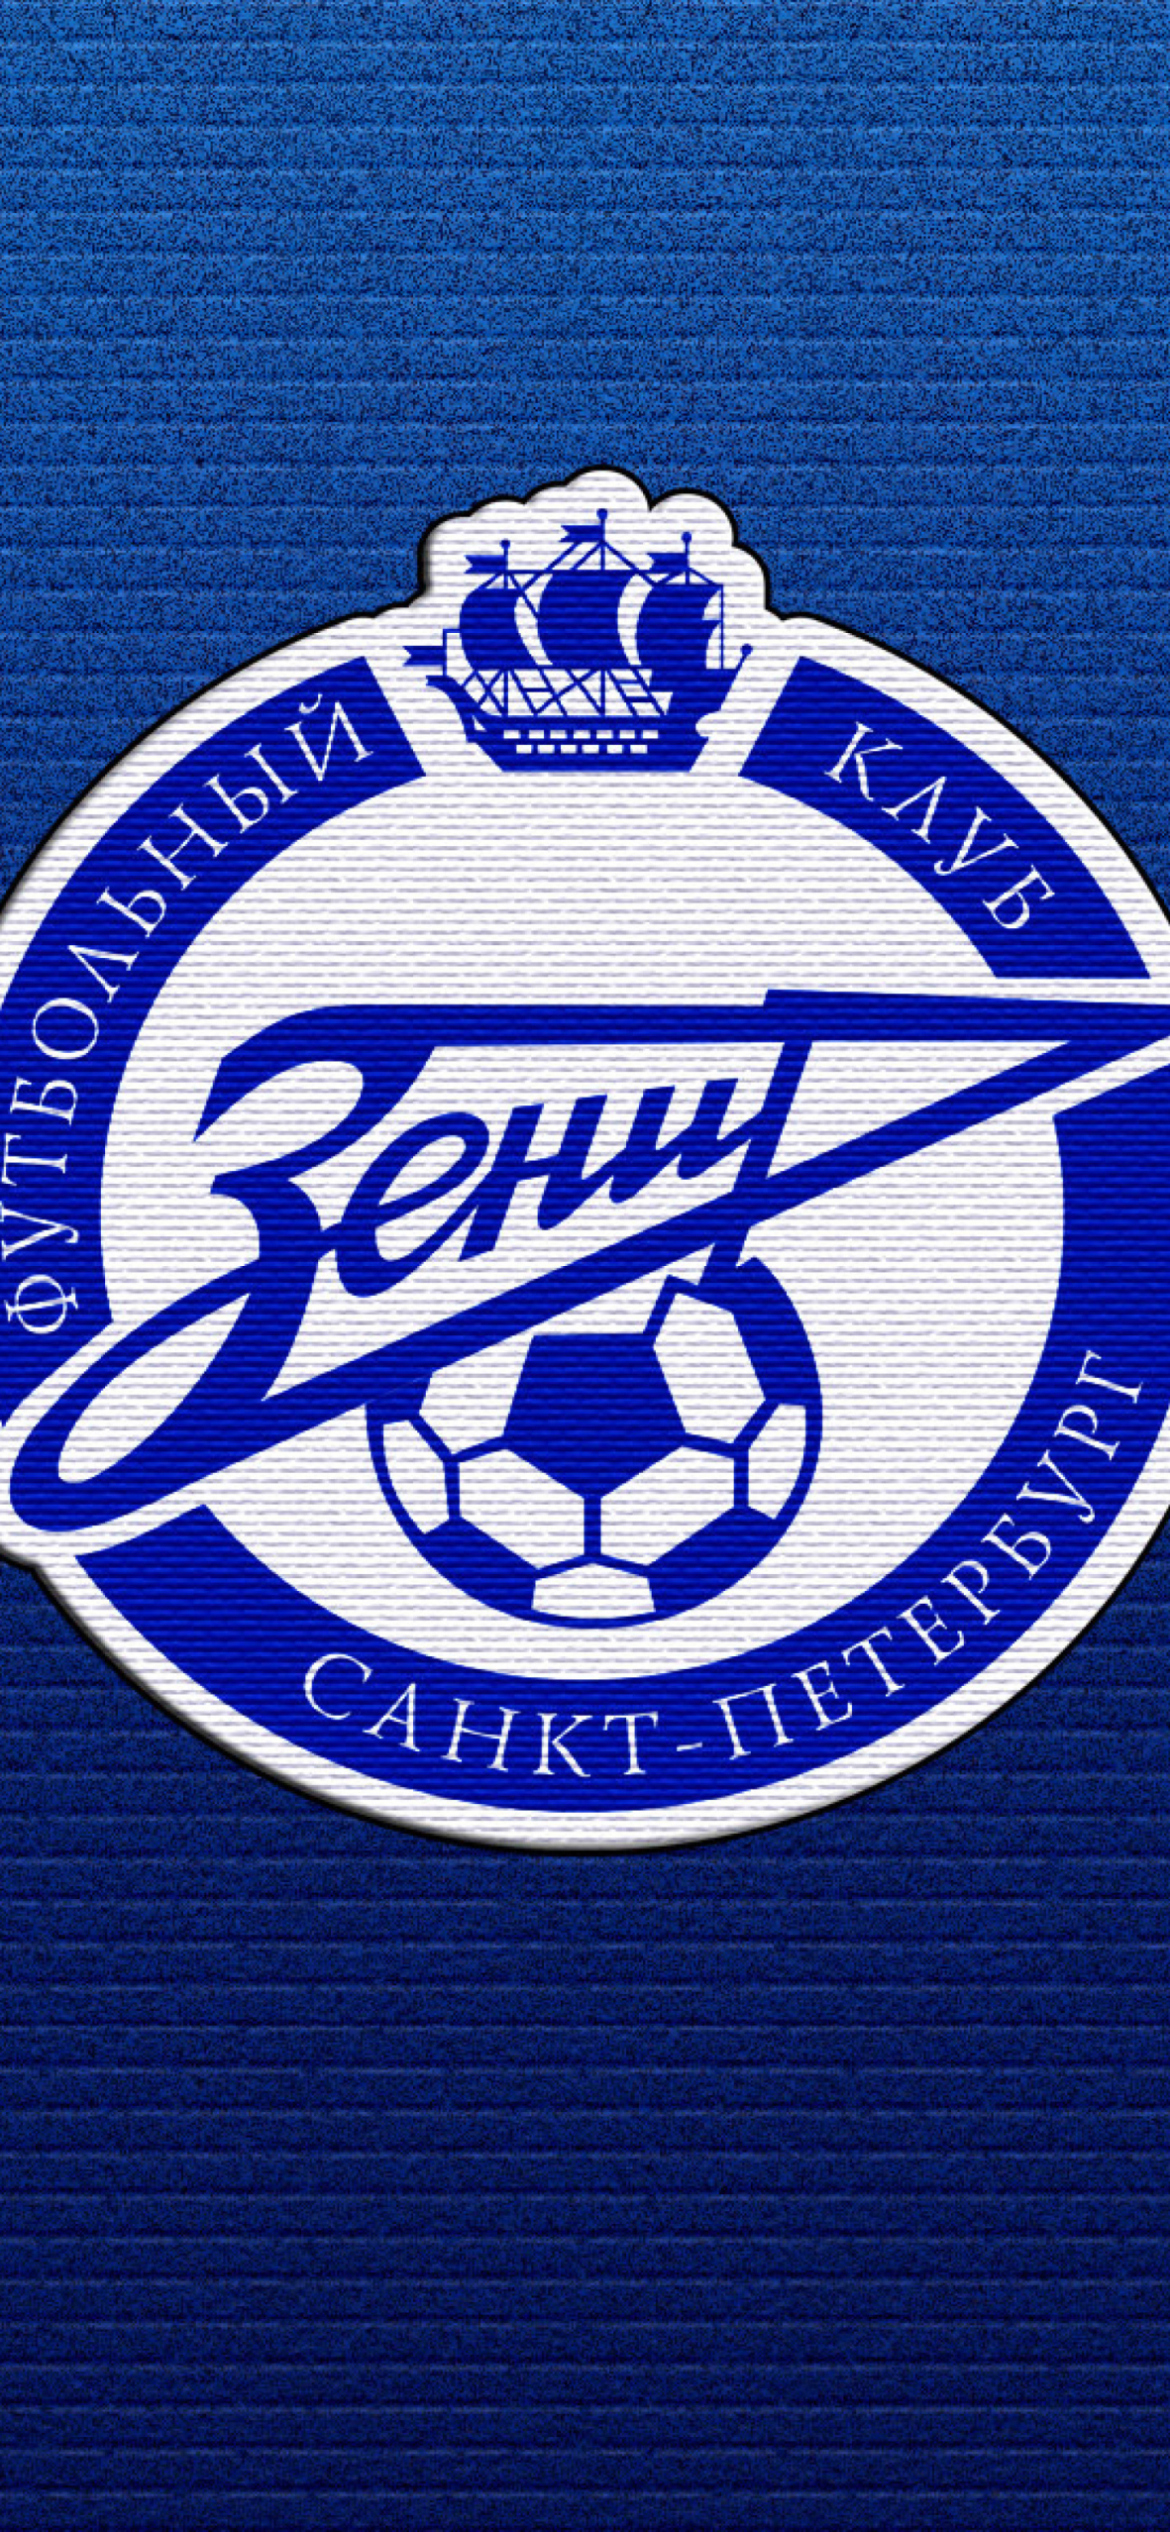 Das Zenit Football Club Wallpaper 1170x2532